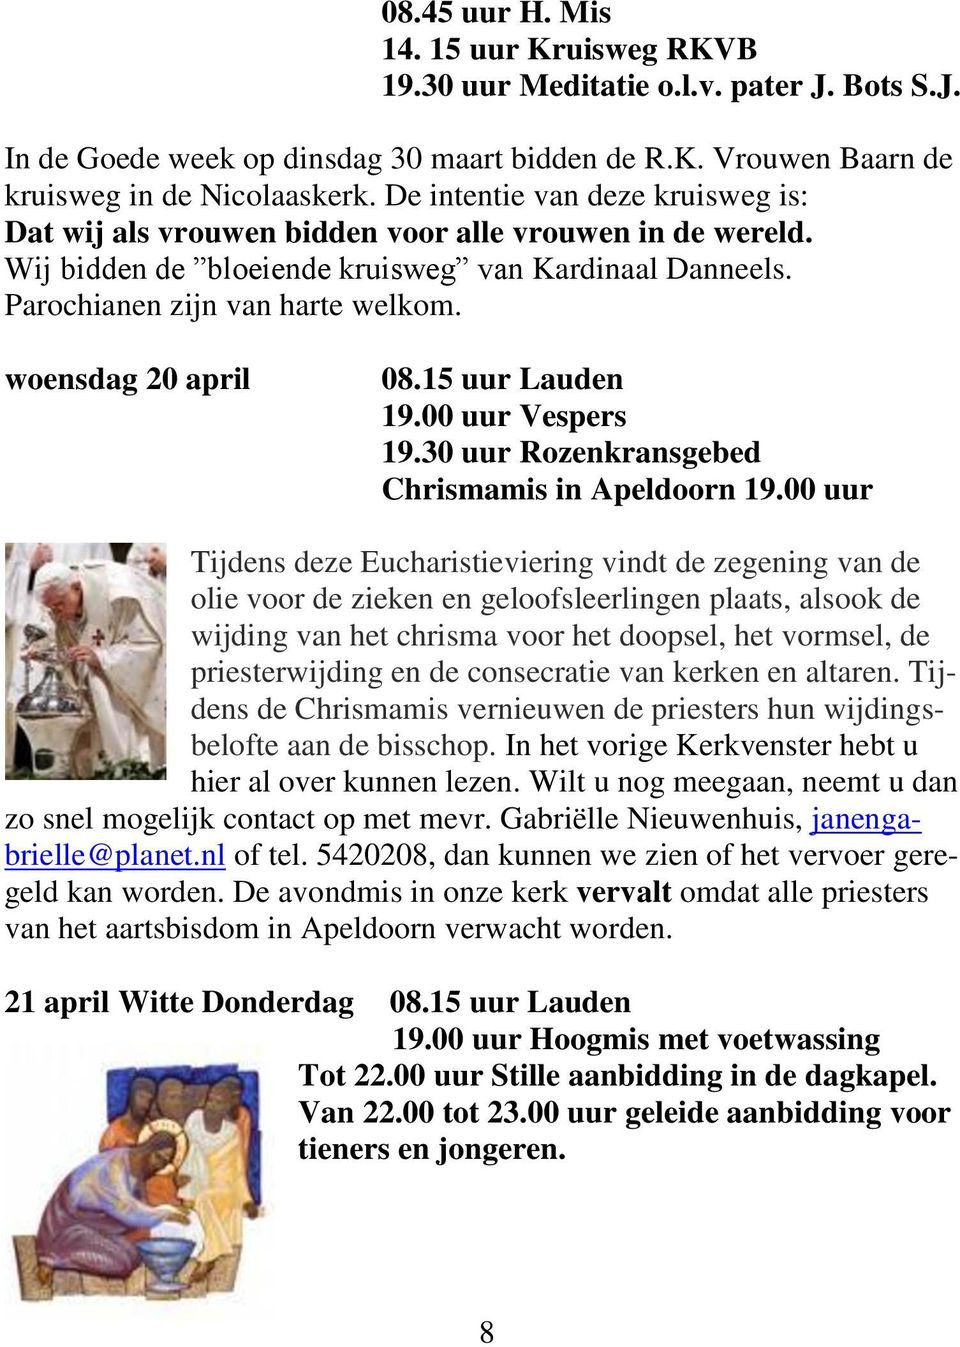 woensdag 20 april 08.15 uur Lauden 19.00 uur Vespers 19.30 uur Rozenkransgebed Chrismamis in Apeldoorn 19.